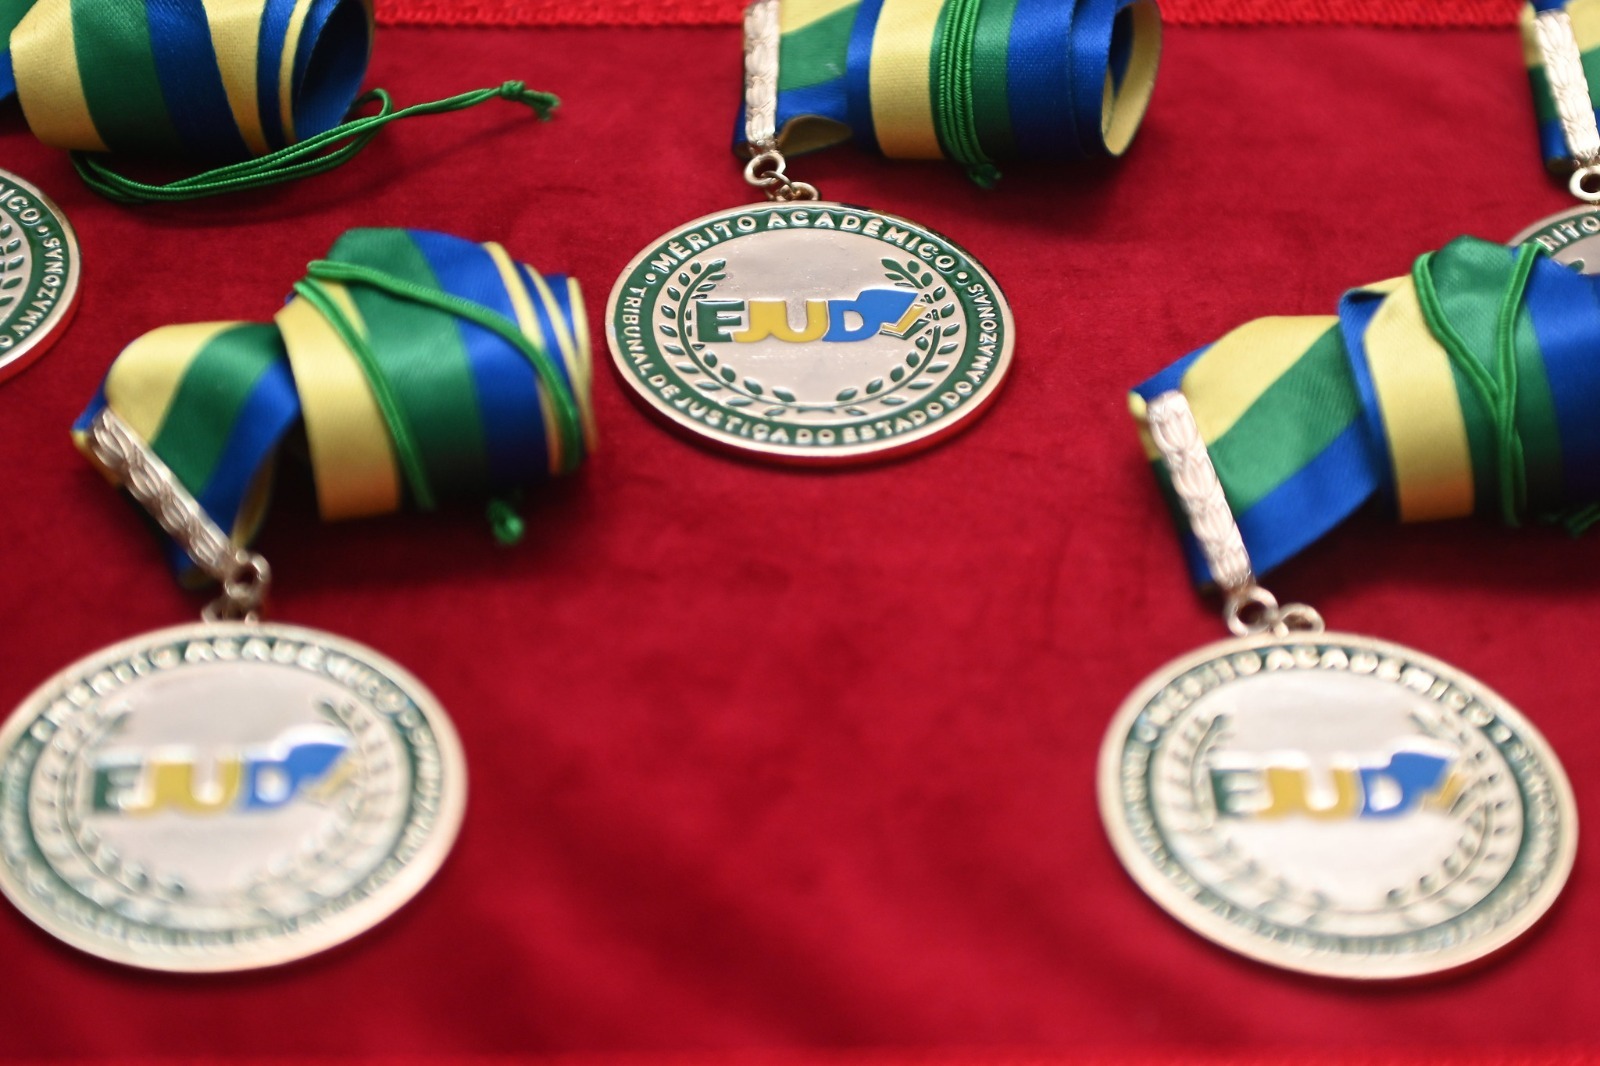 Foto colorida mostra três medalhas de de Mérito Acadêmico da Escola Judicial do Justiça do Amazonas (Ejud/TJAM)